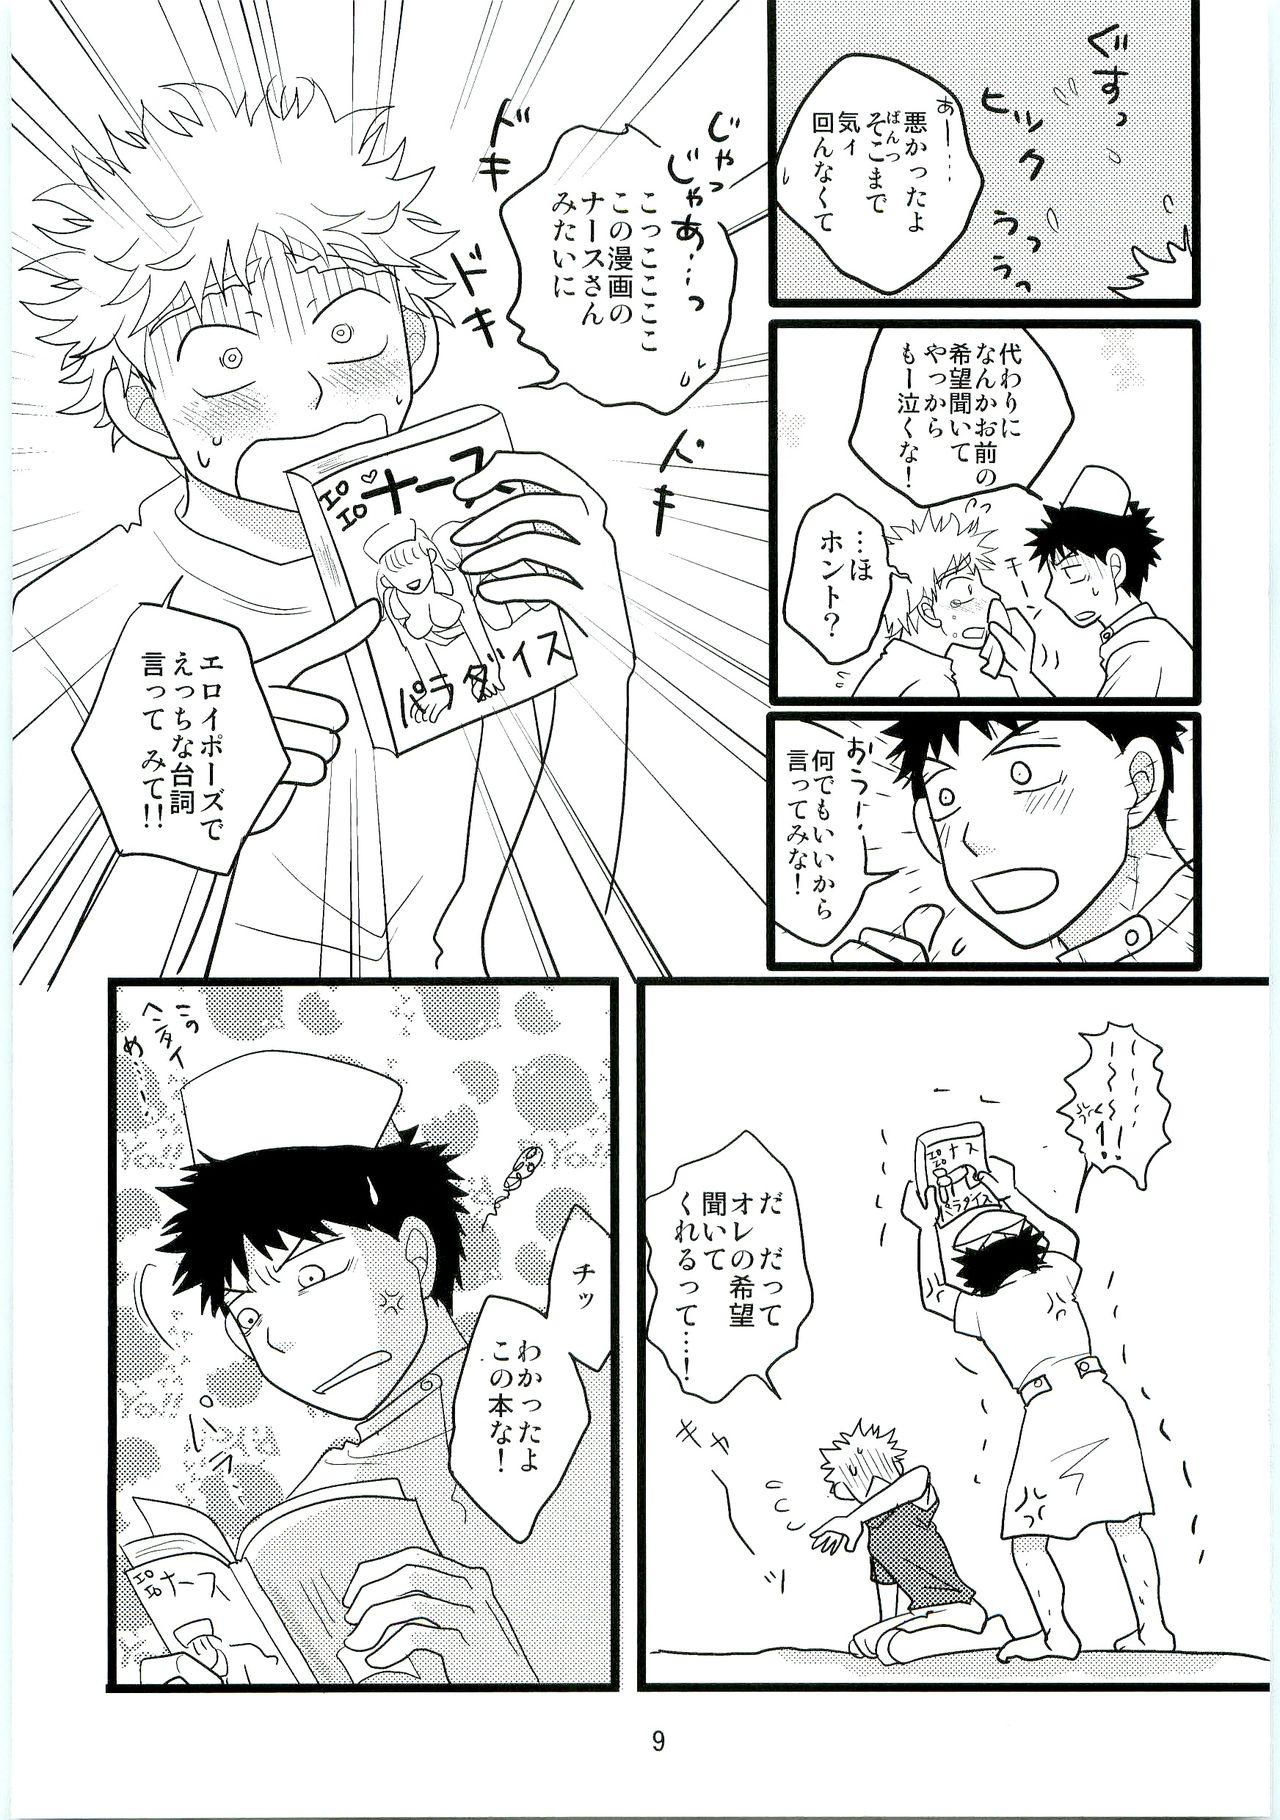 Abg Kimi no Chuusha wa 1-man Barrel - Ookiku furikabutte Sentones - Page 8